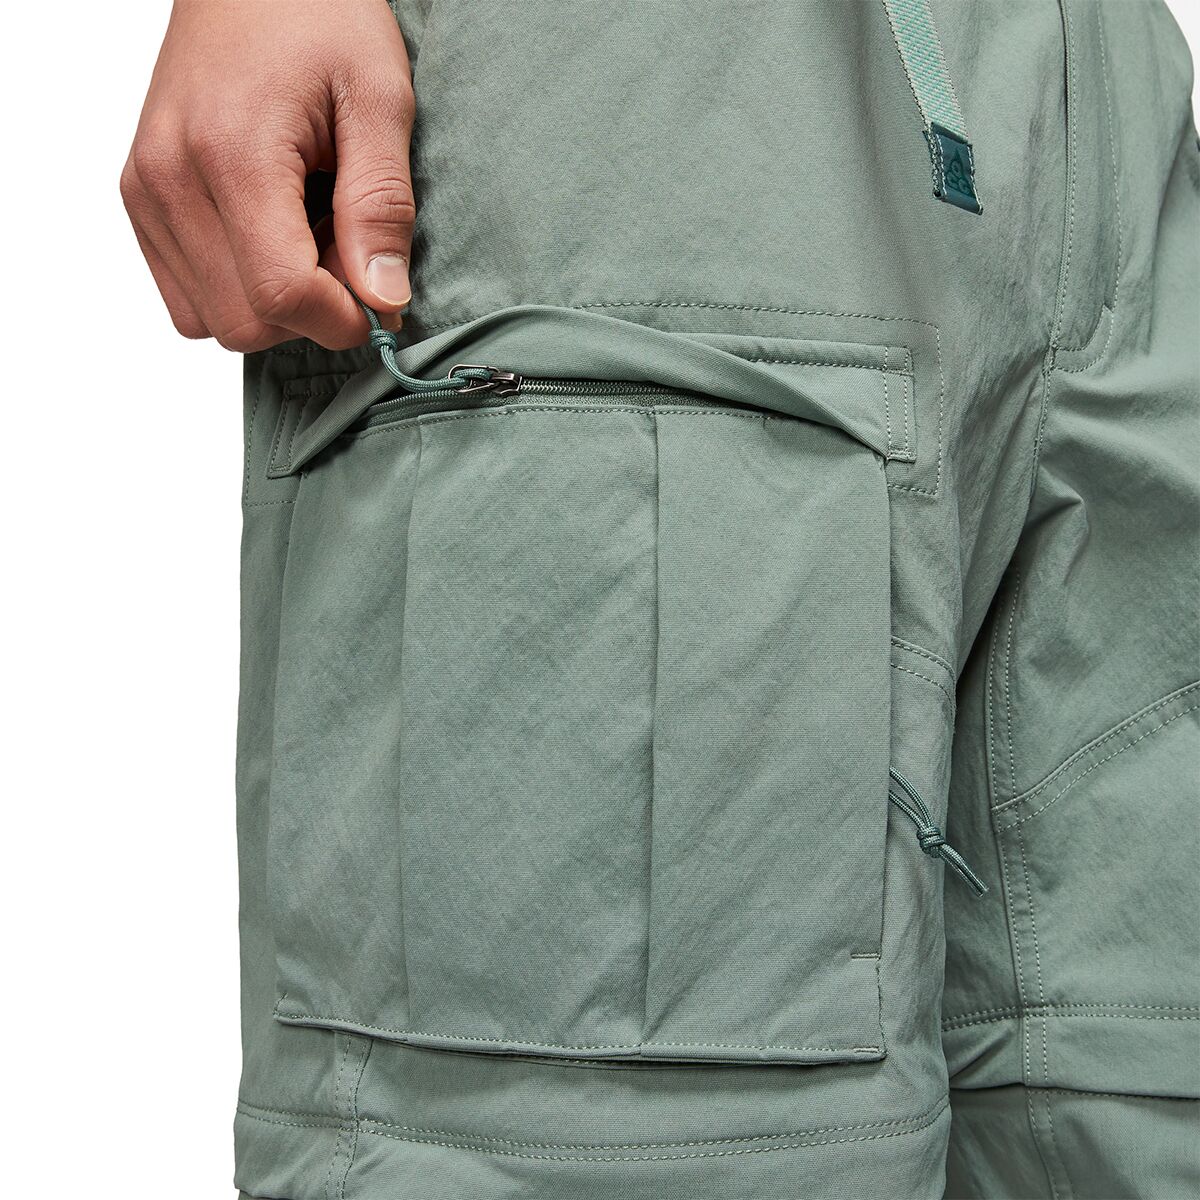 Nike NRG ACG Smith Summit Cargo Pant - Men's - Clothing